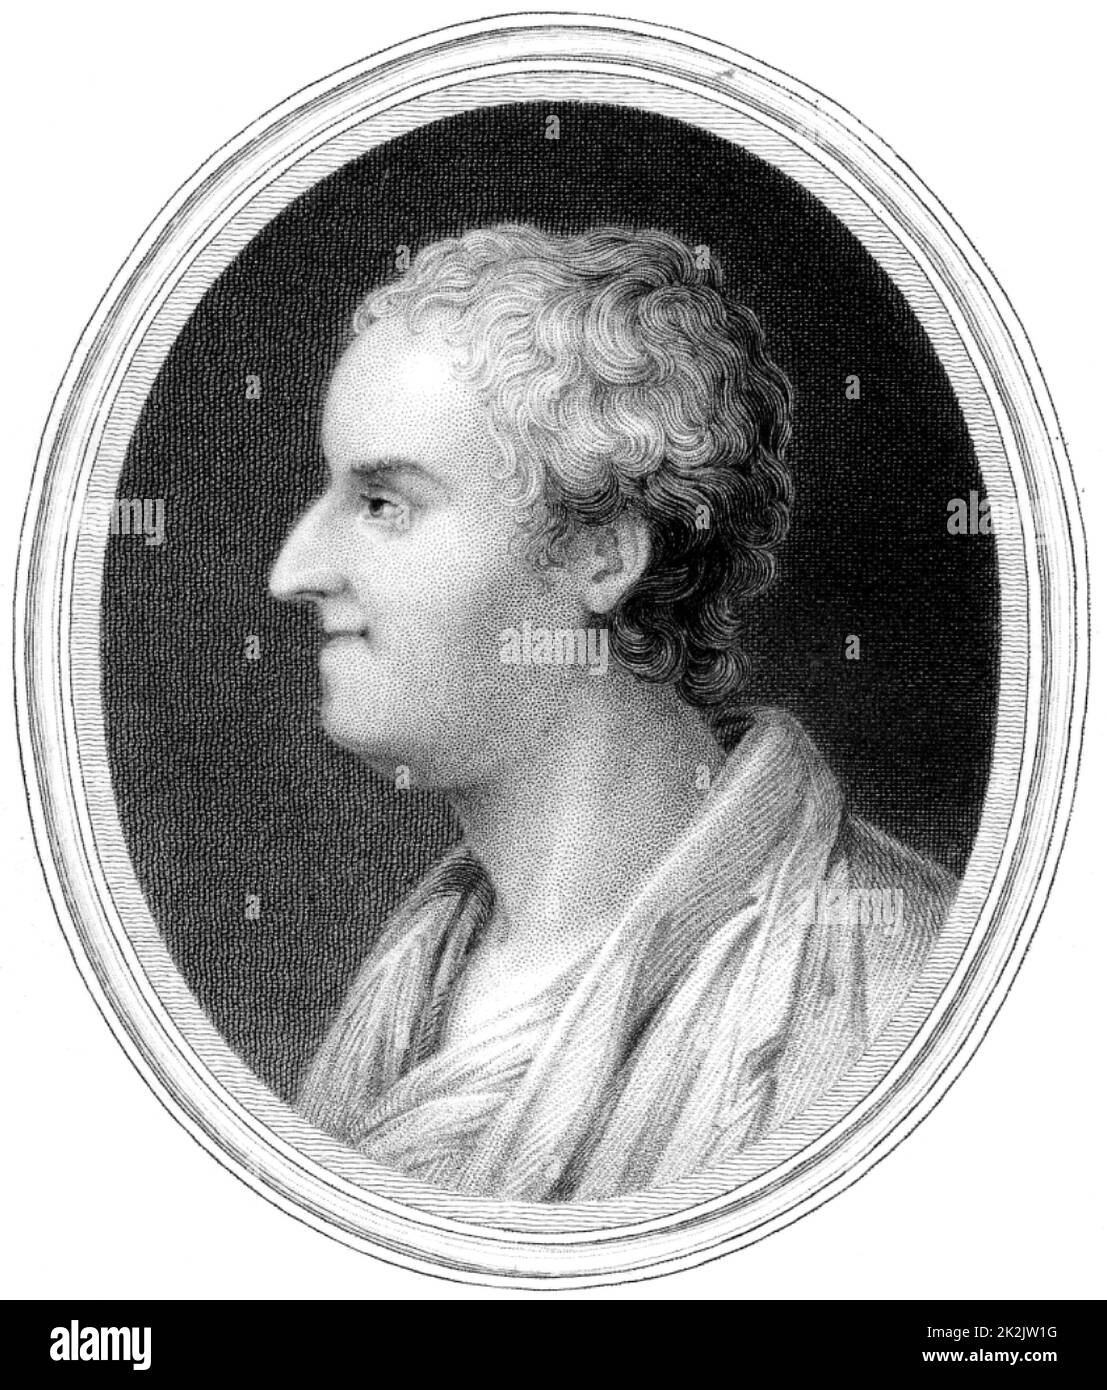 Thomas Gray (1716-1771) englischer Dichter und klassischer Philologe. Gravur, London, 1837. Stockfoto